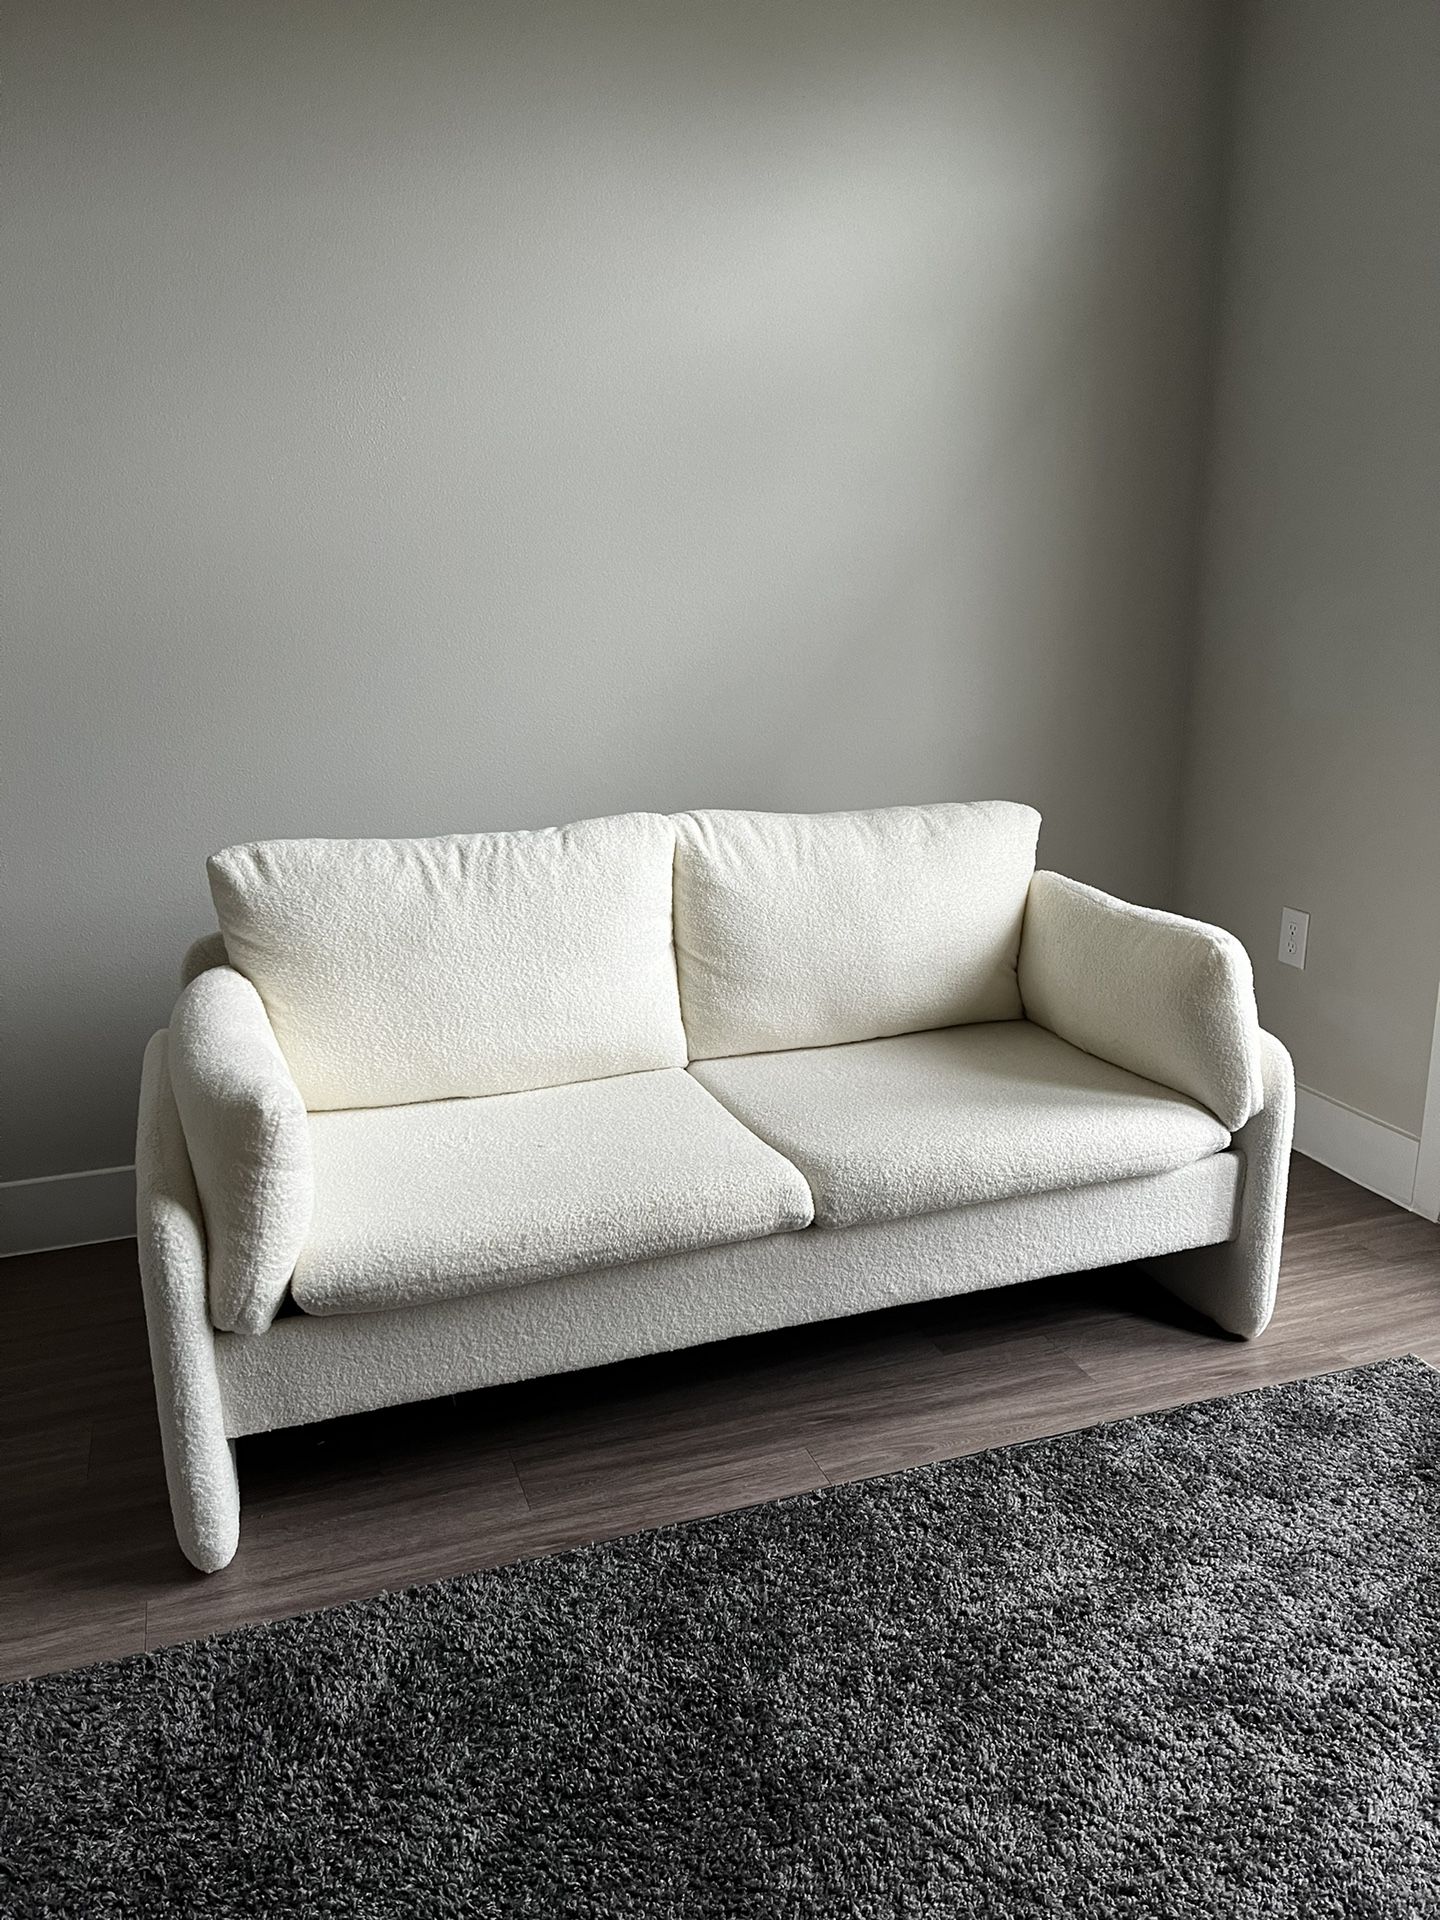 Brand New White Sofa